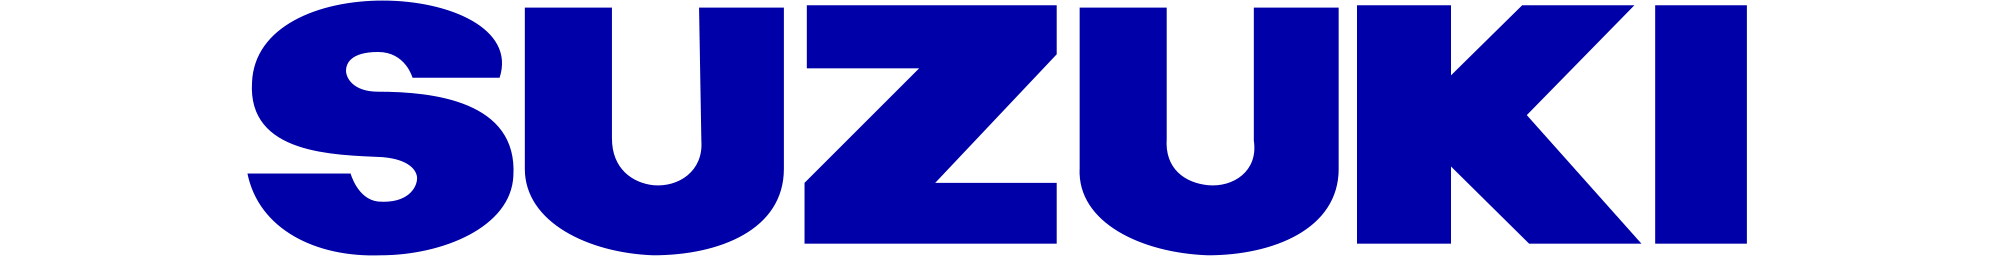 Suzuki Logo Blue Background